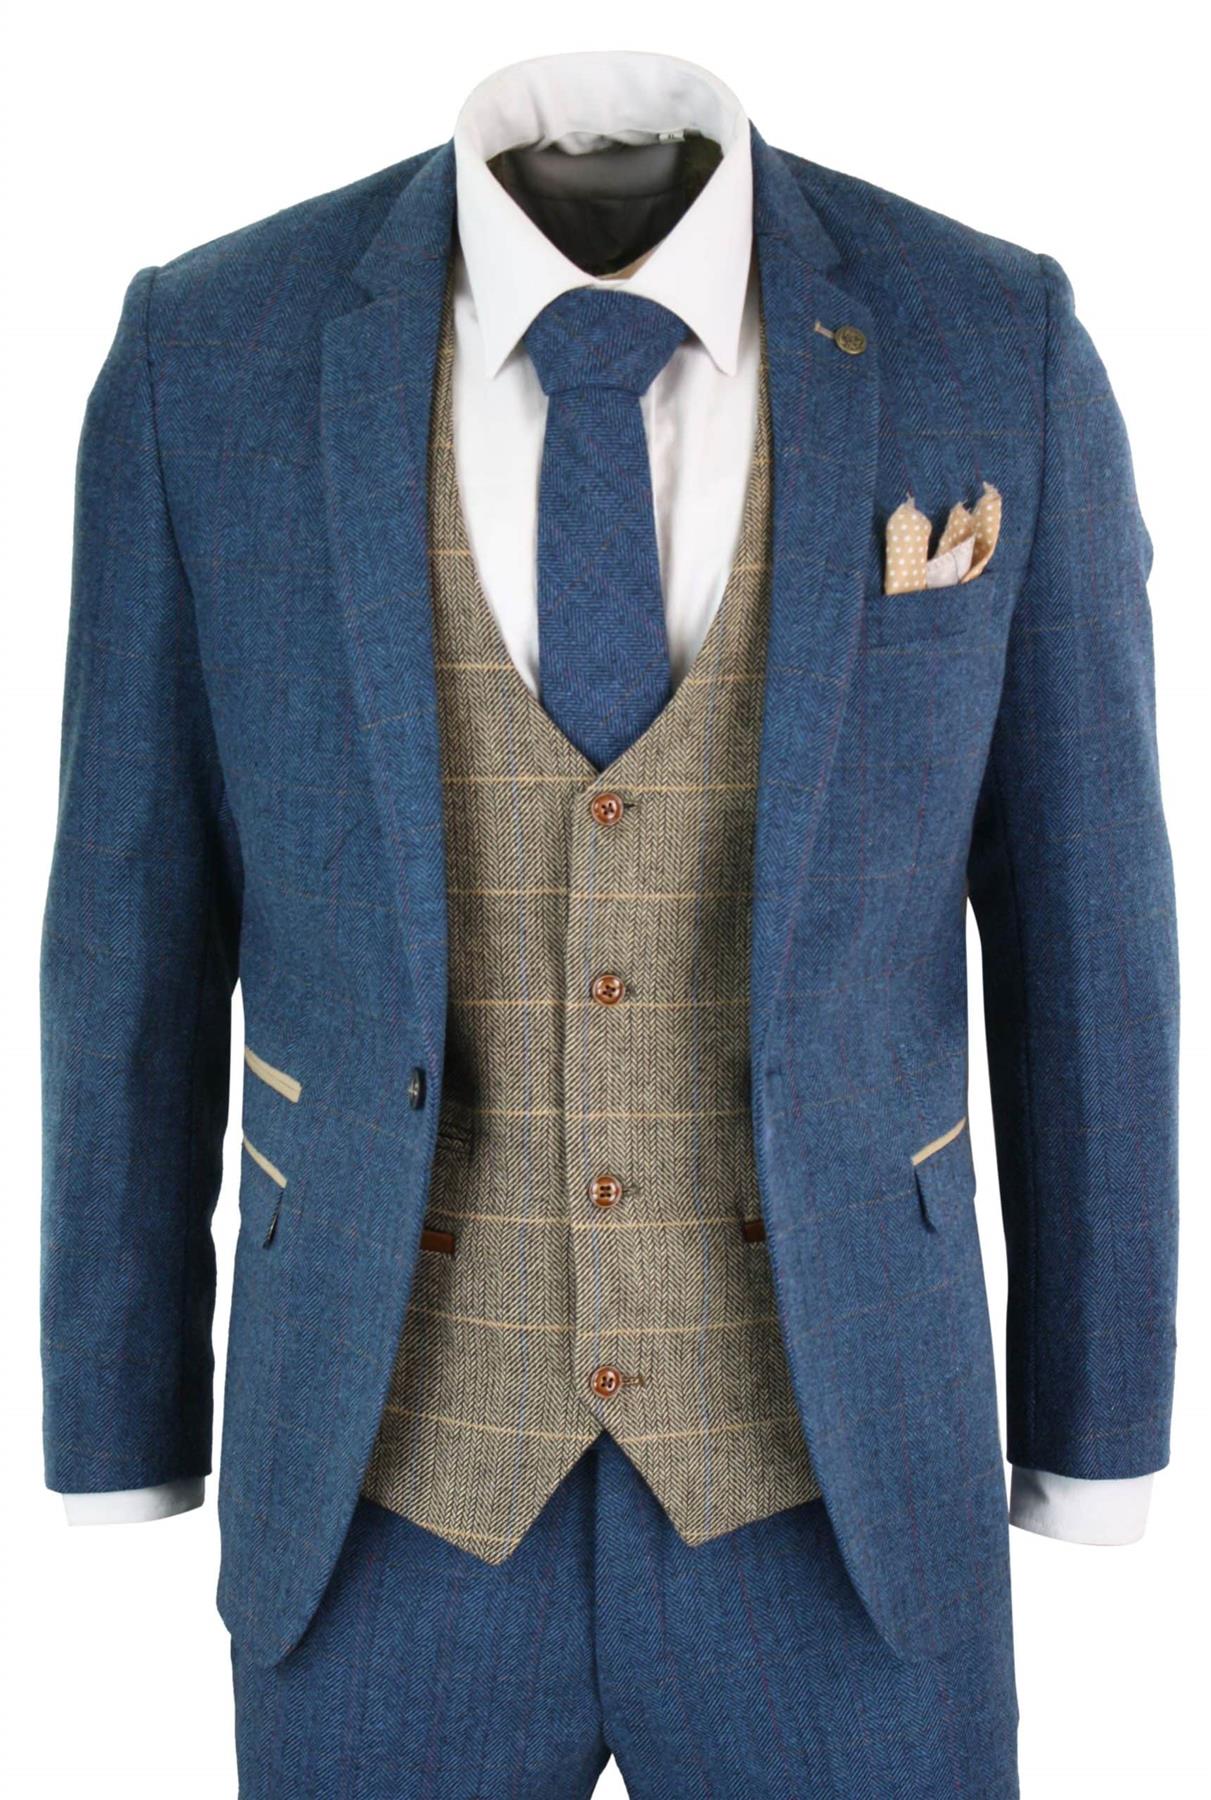 Mens 3 Piece Blue Tweed Vintage Suit